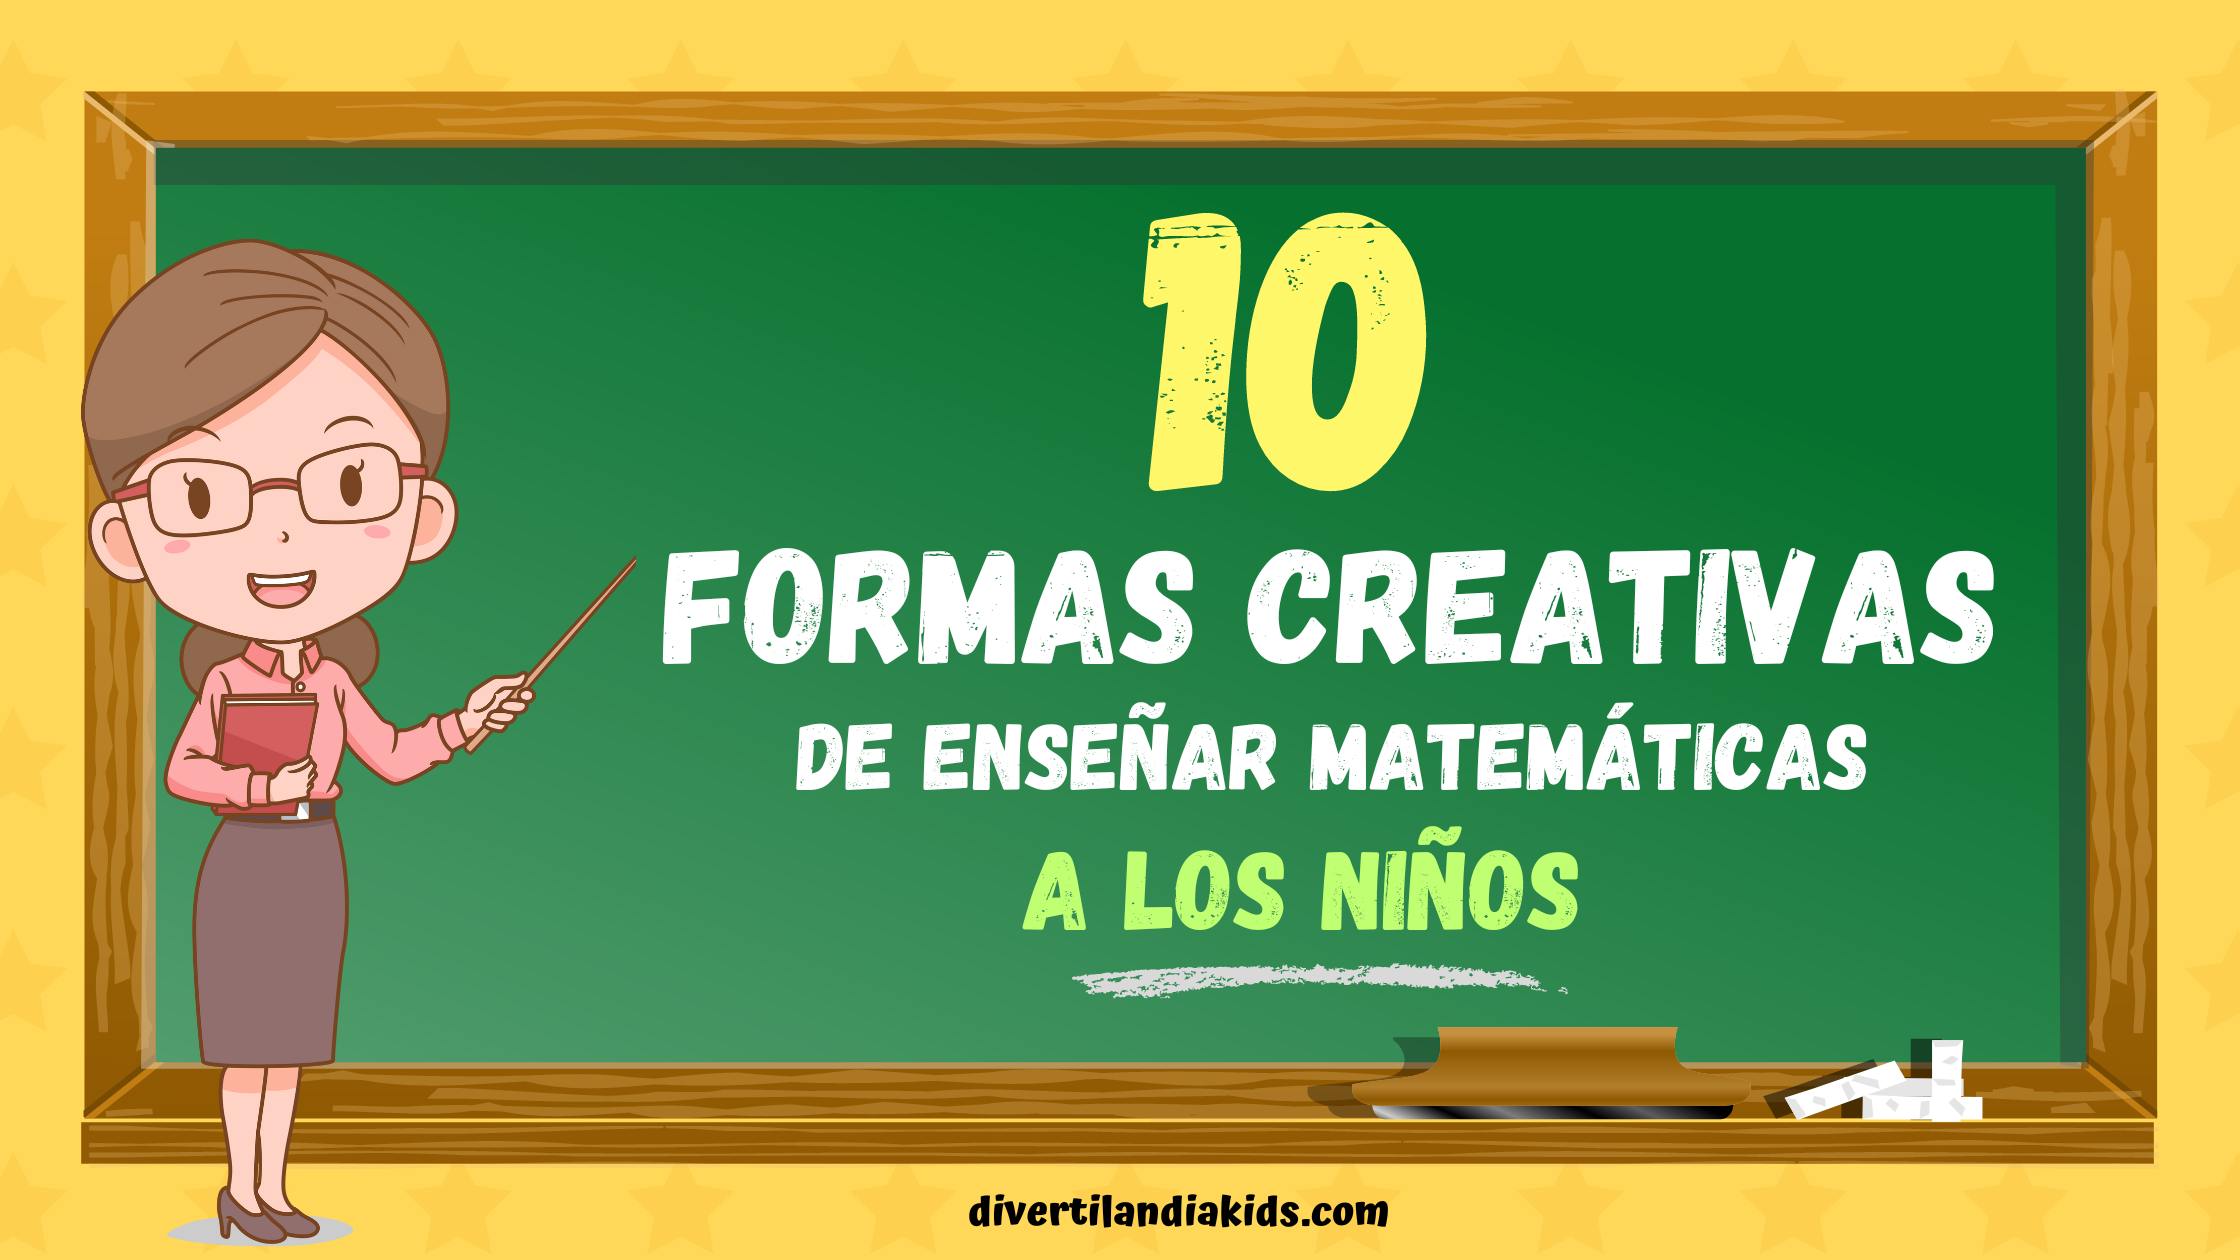 En este momento estás viendo 10 Formas Creativas de Enseñar Matemáticas a los niños